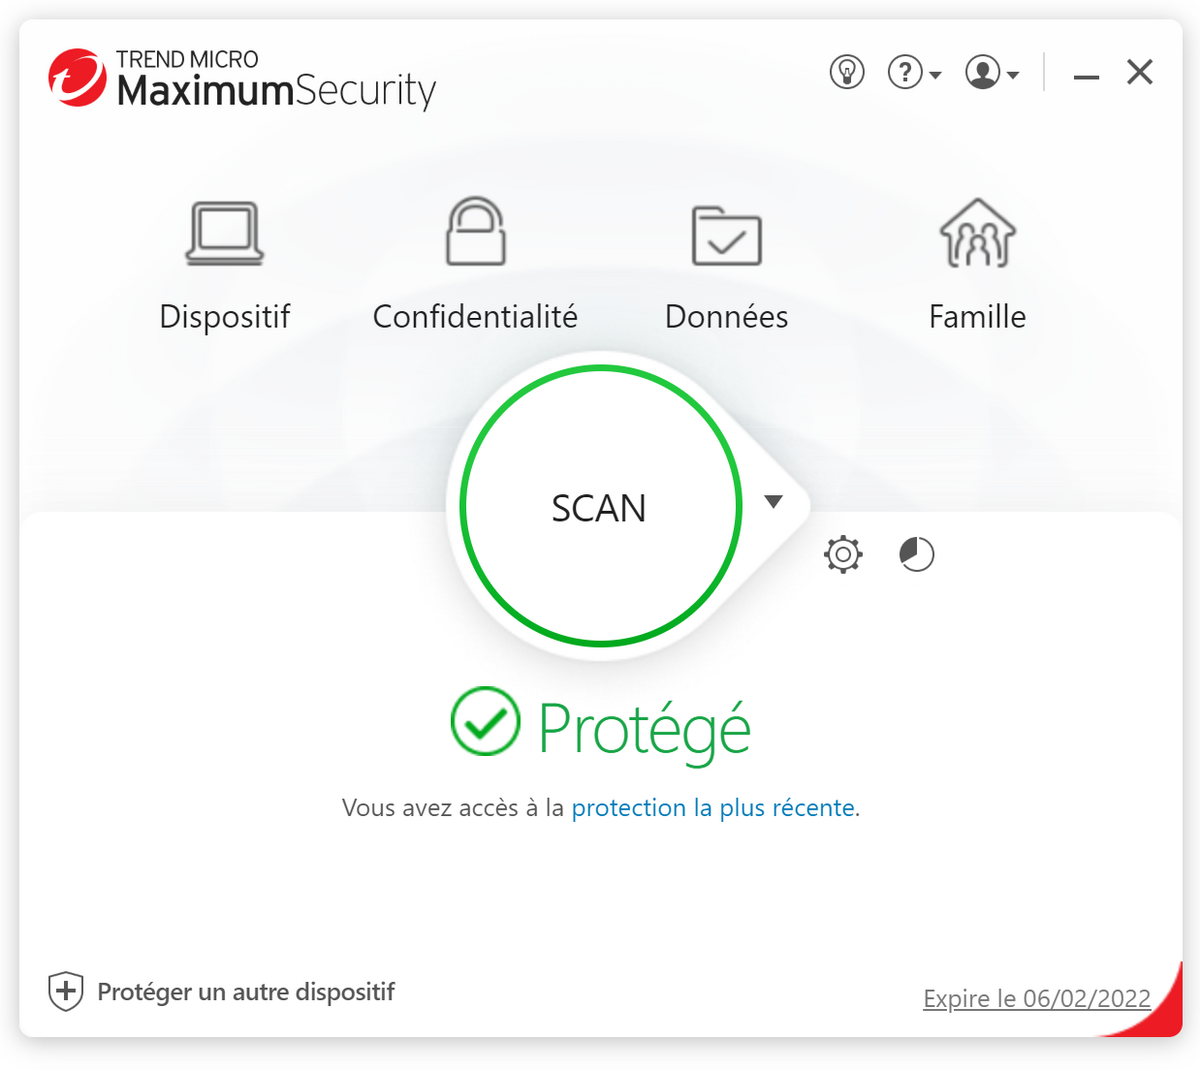 Trend Micro Maximum Security - Scan